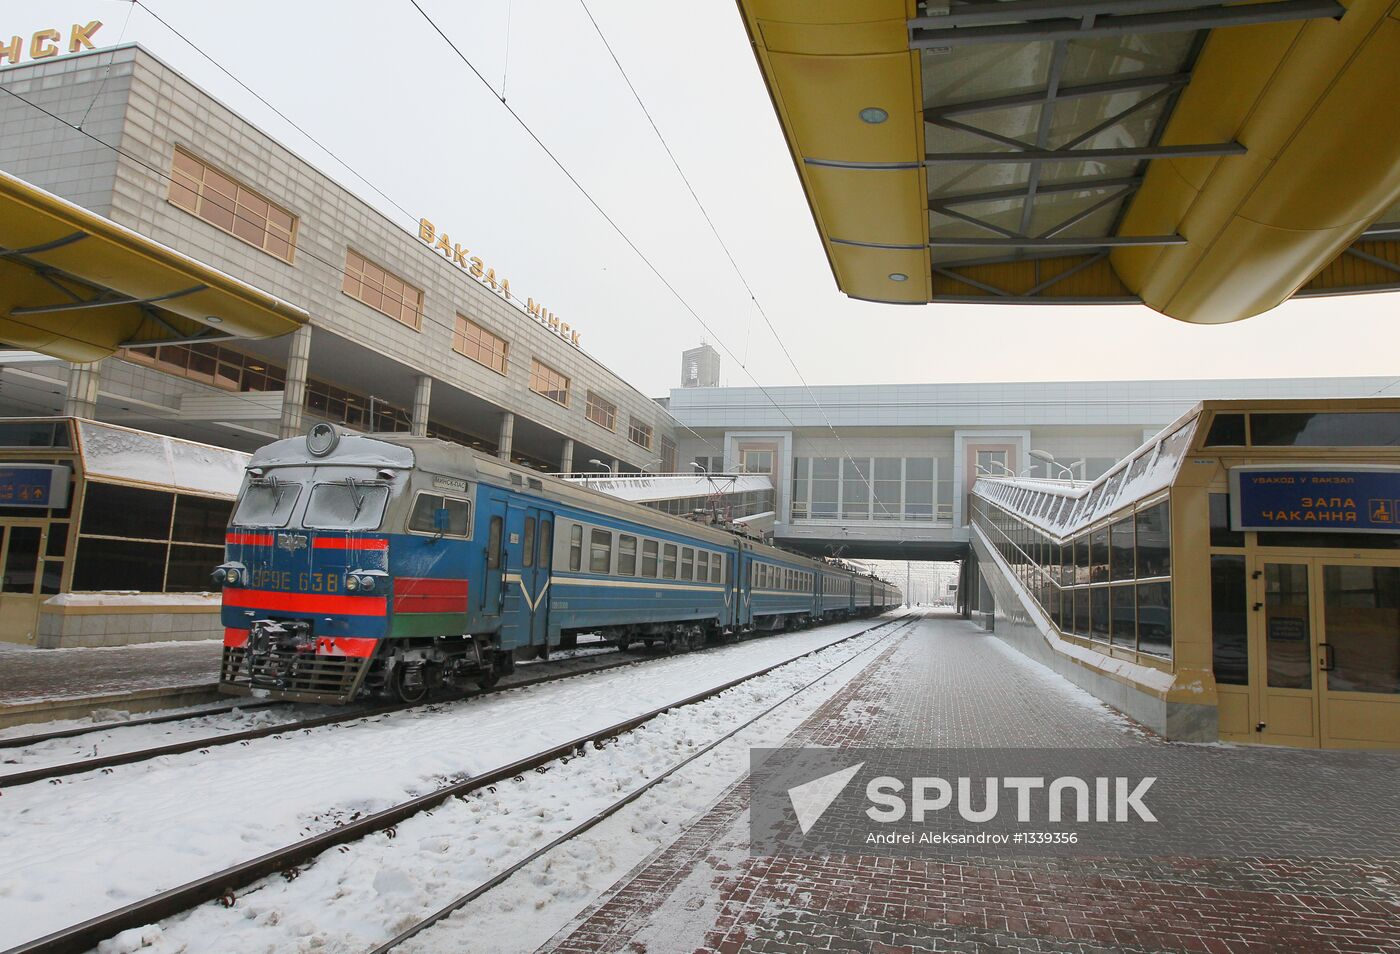 Main railway station in Minsk